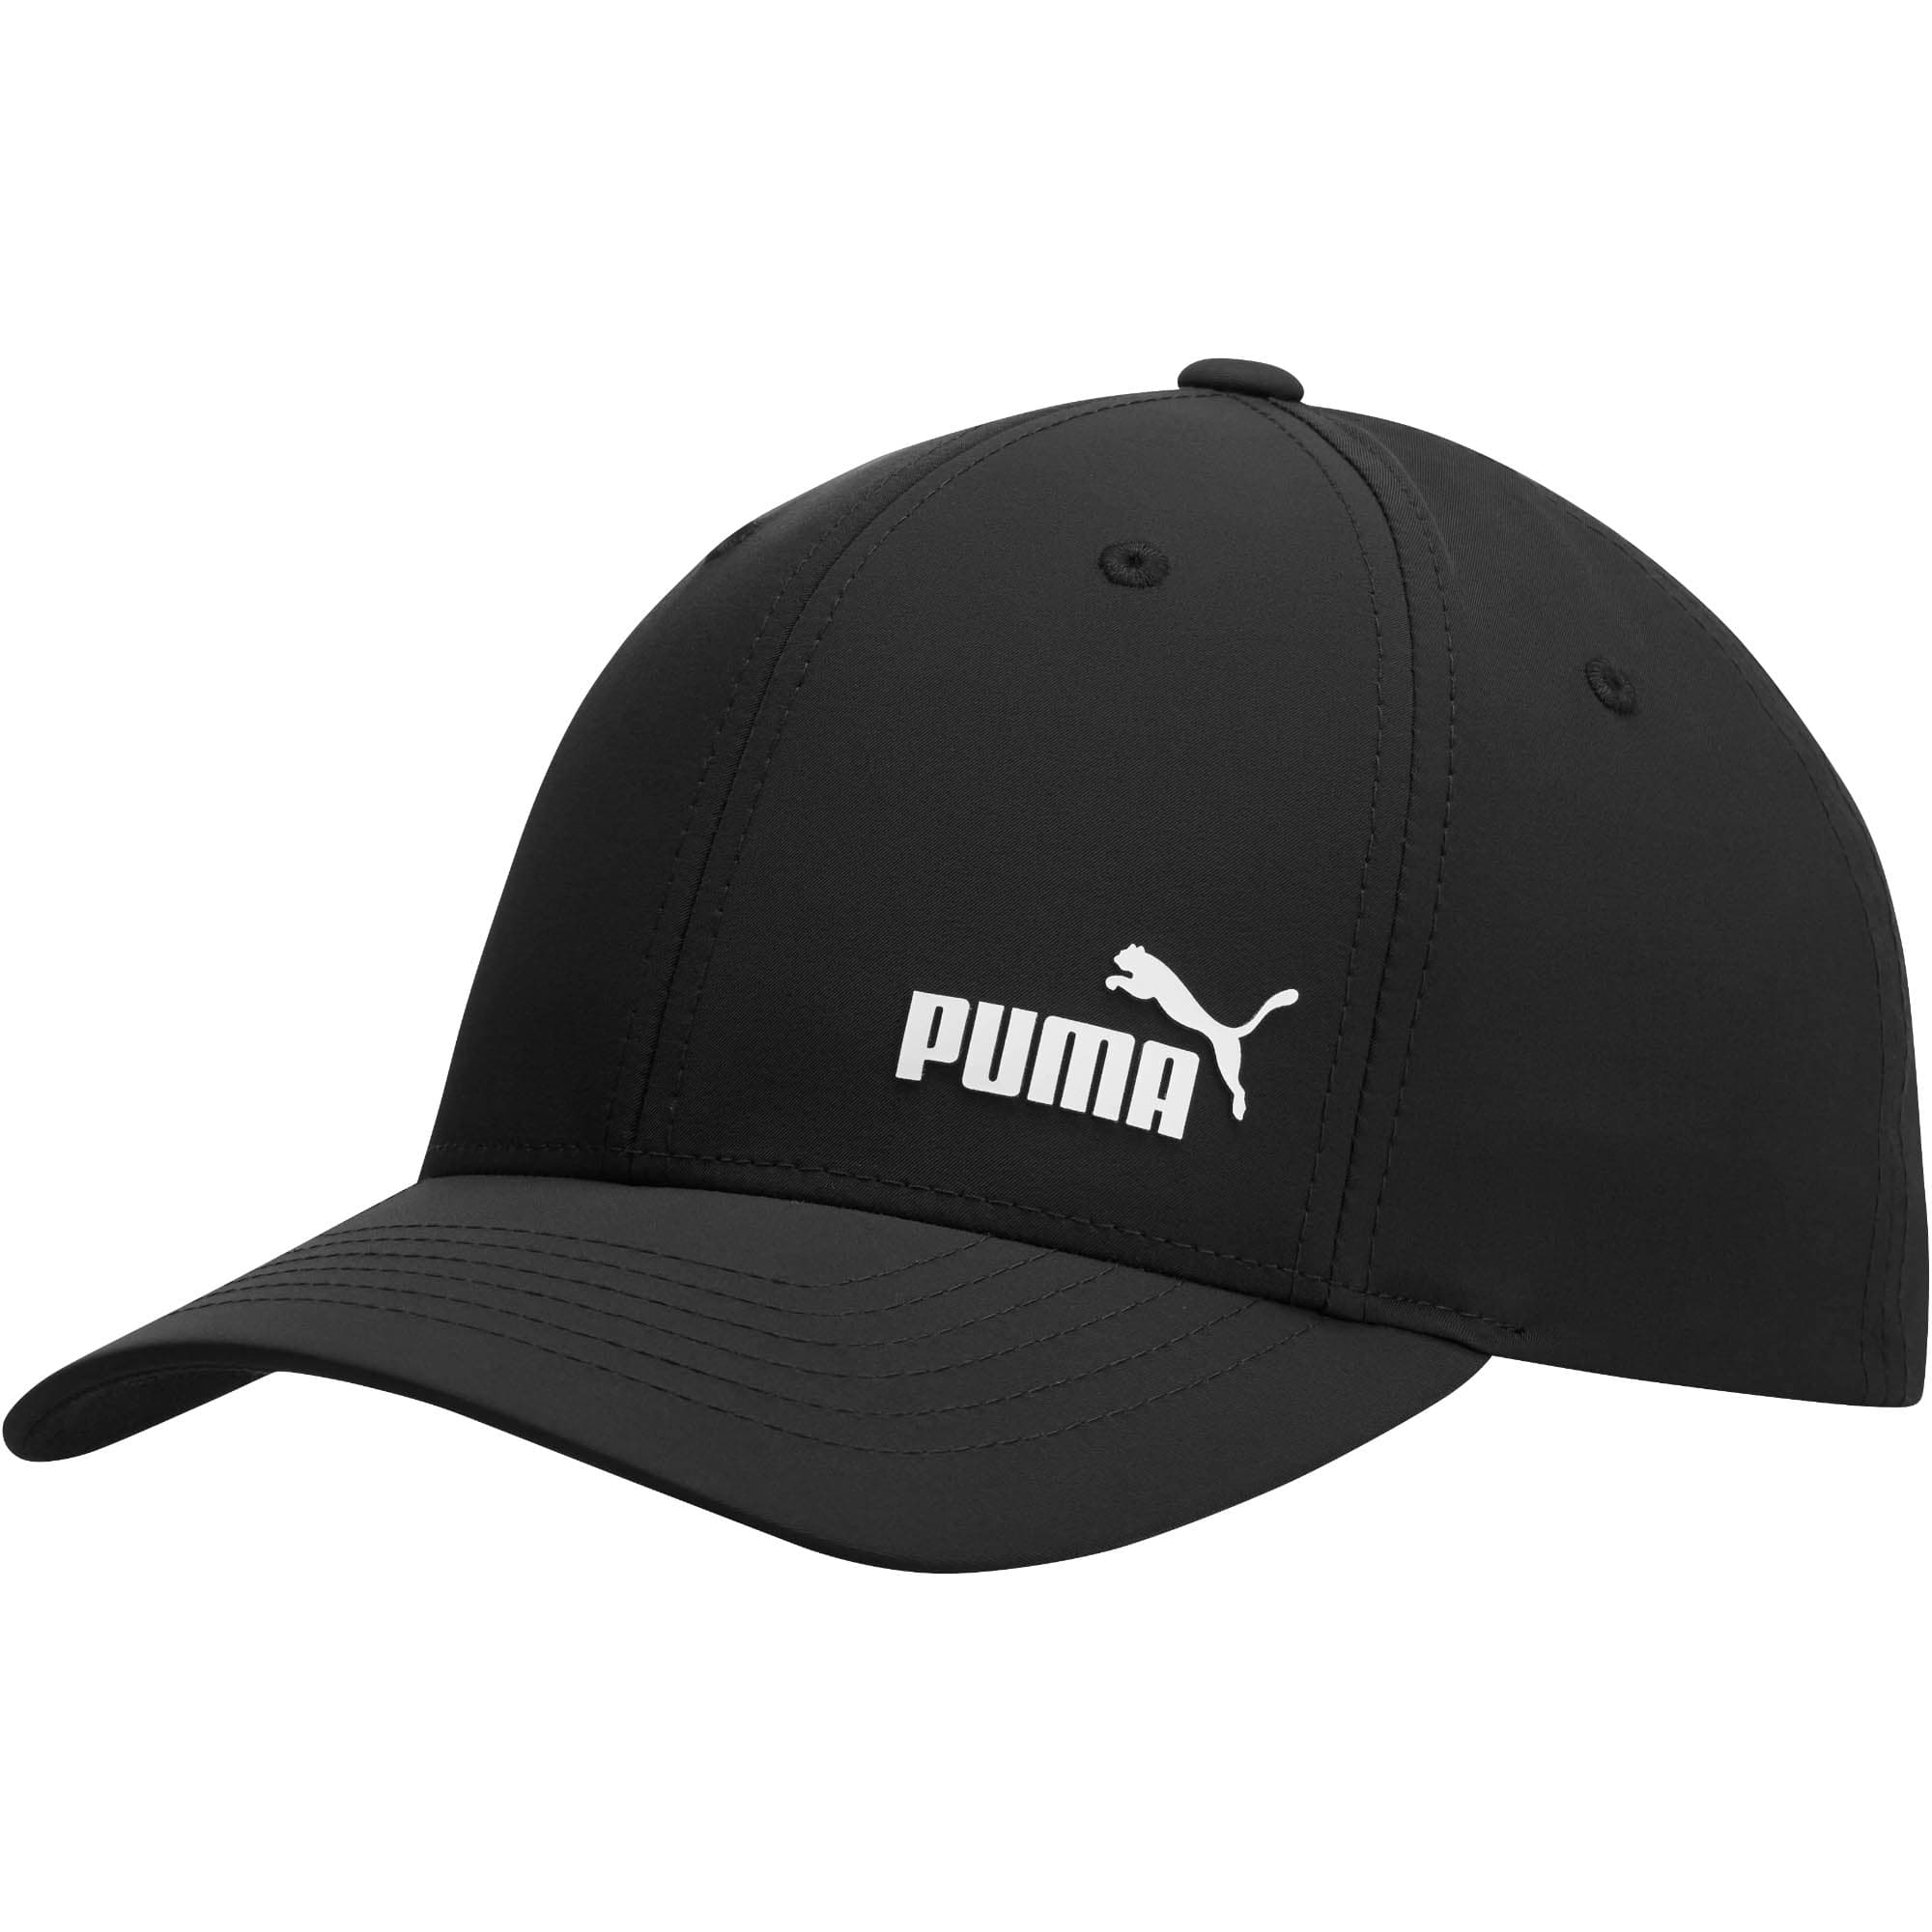 puma caps offers